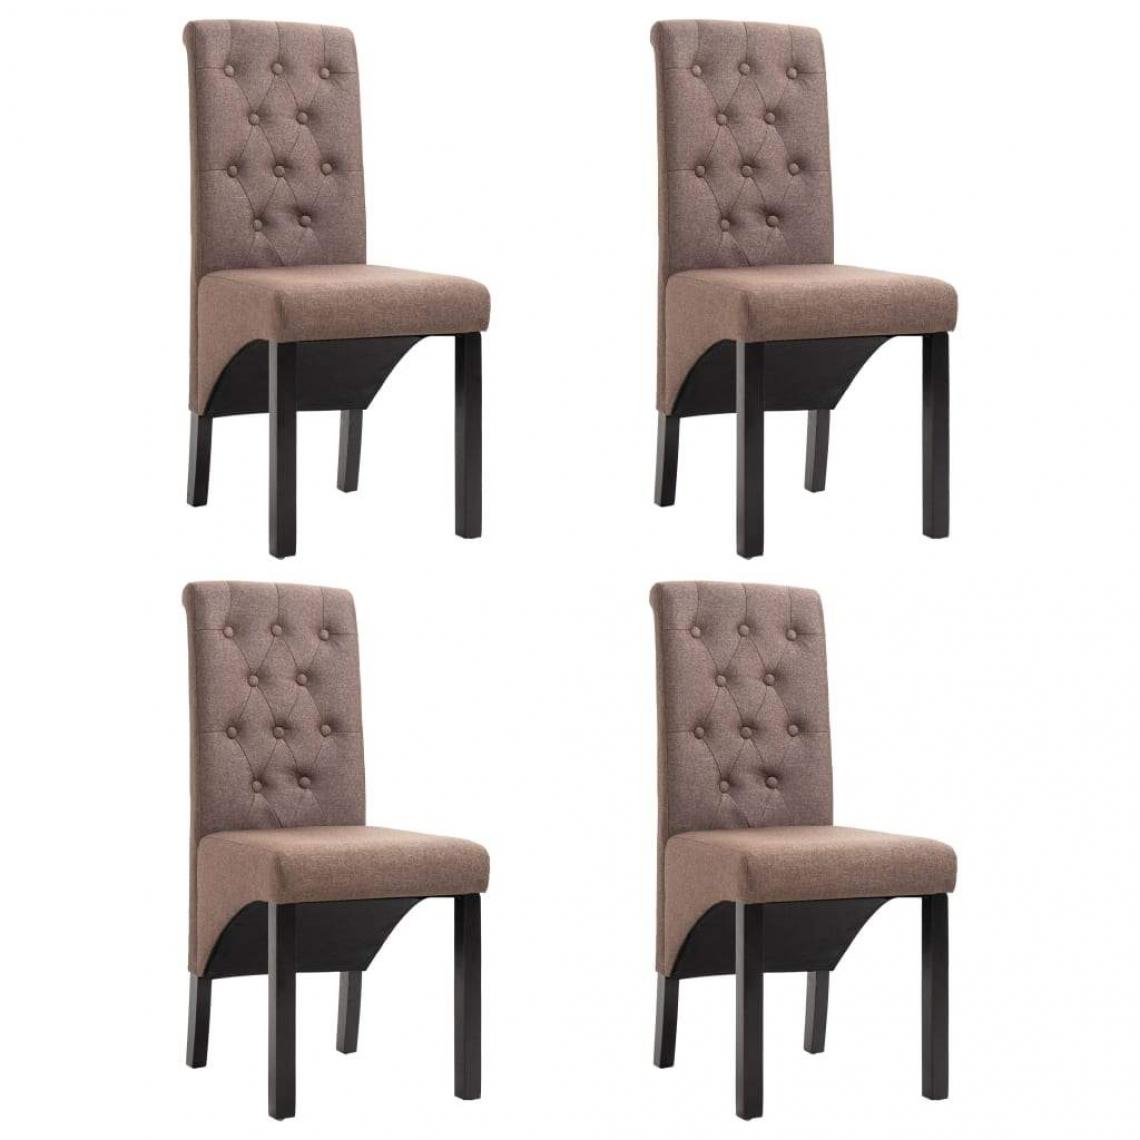 Decoshop26 - Lot de 4 chaises de salle à manger cuisine design rétro tissu marron CDS021744 - Chaises